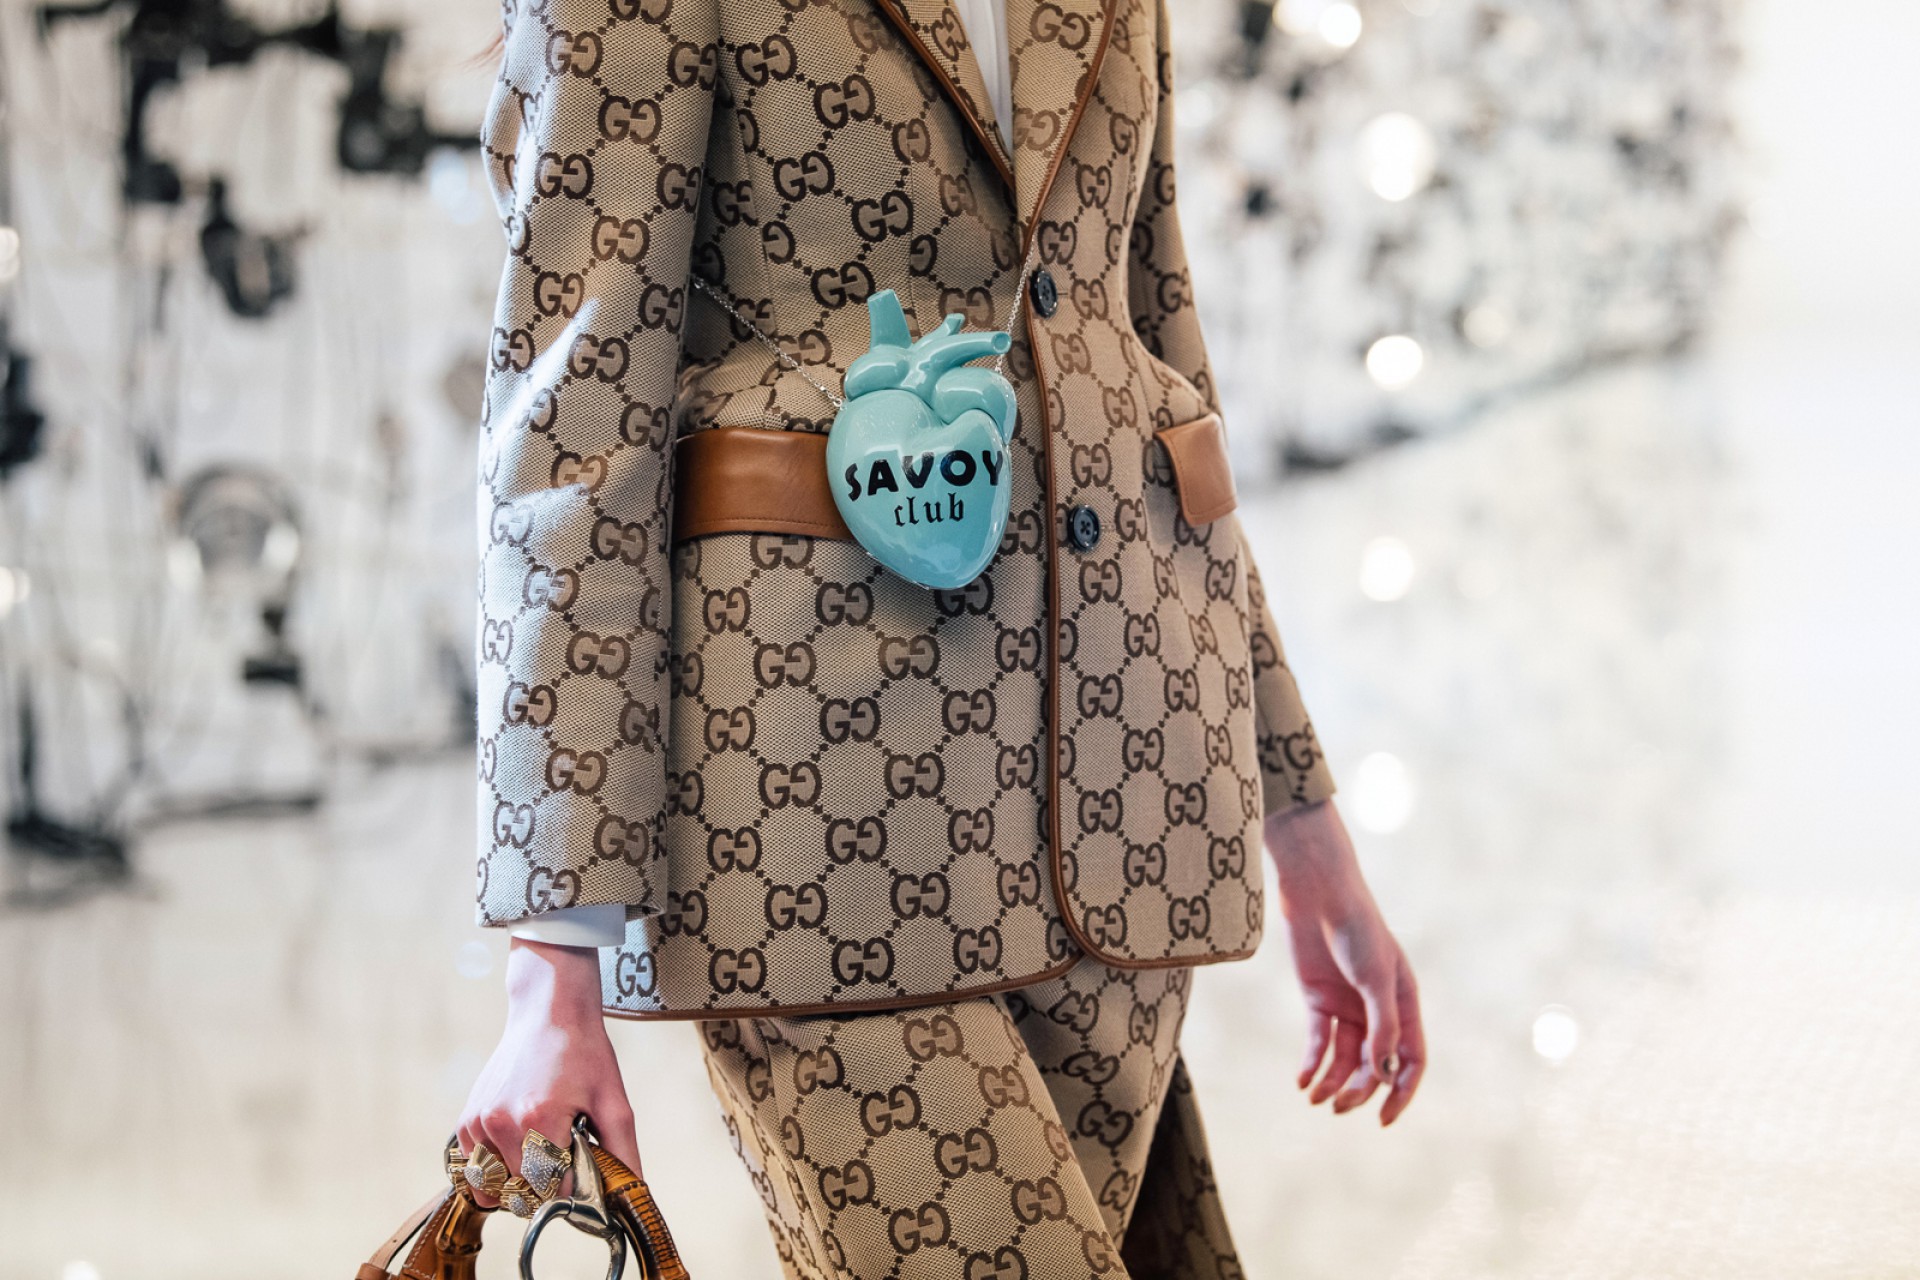 O nome Savoy Club - na bag, presa como pochete - faz menção ao antigo hotel onde trabalhou, de porteiro, antes de criar sua Gucci, marca inicialmente de malas, o dono da gigante italiana, hoje, dirigida por Alessandro Michele, Guccio Gucci (Foto: Divulgação)